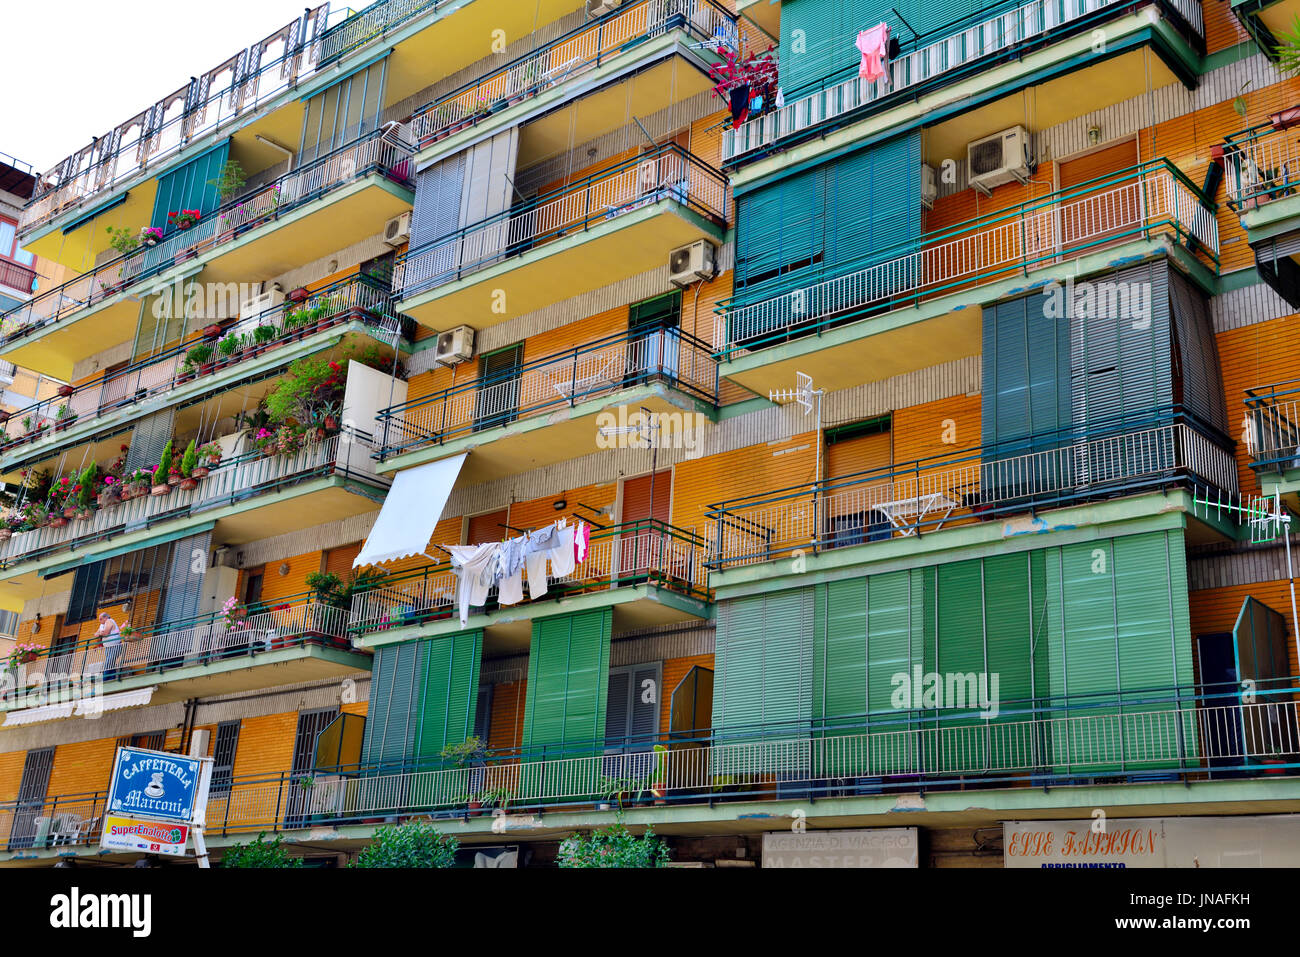 Apartment Building in Naples, Italie avec balcon dont certaines ont des pare-soleil Banque D'Images